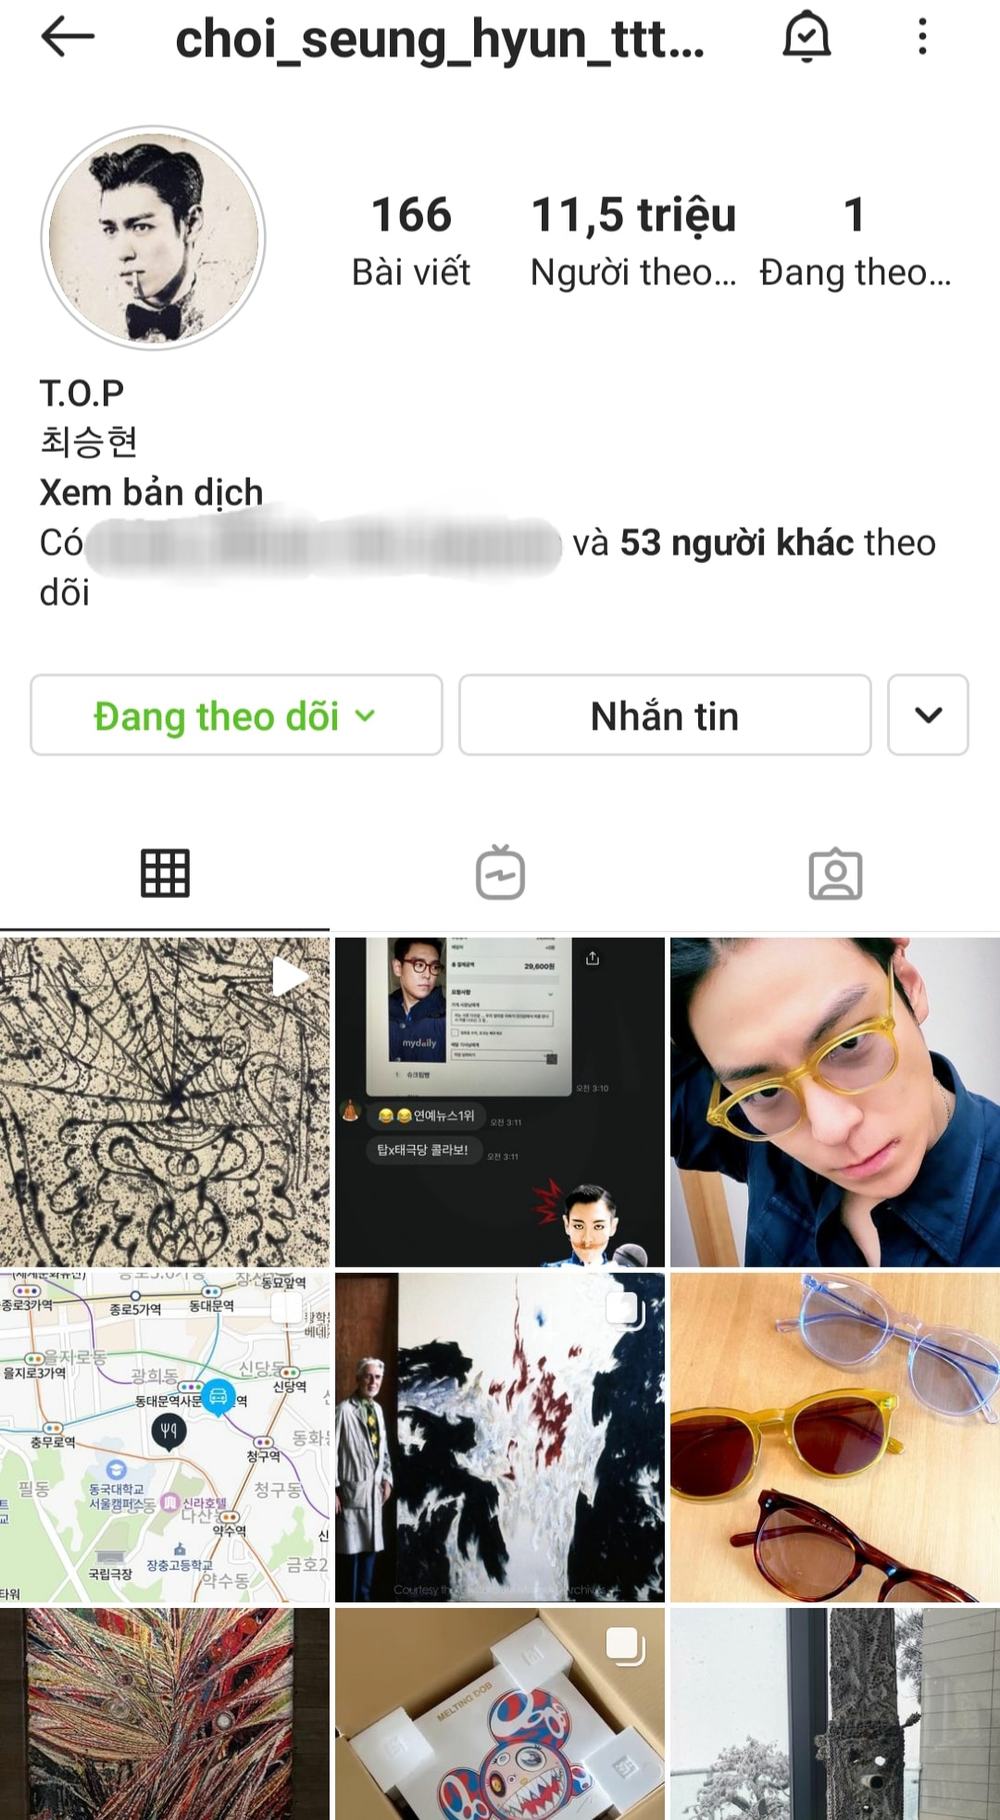  
T.O.P theo dõi một tài khoản duy nhất trên Instagram. (Ảnh: Chụp màn hình)